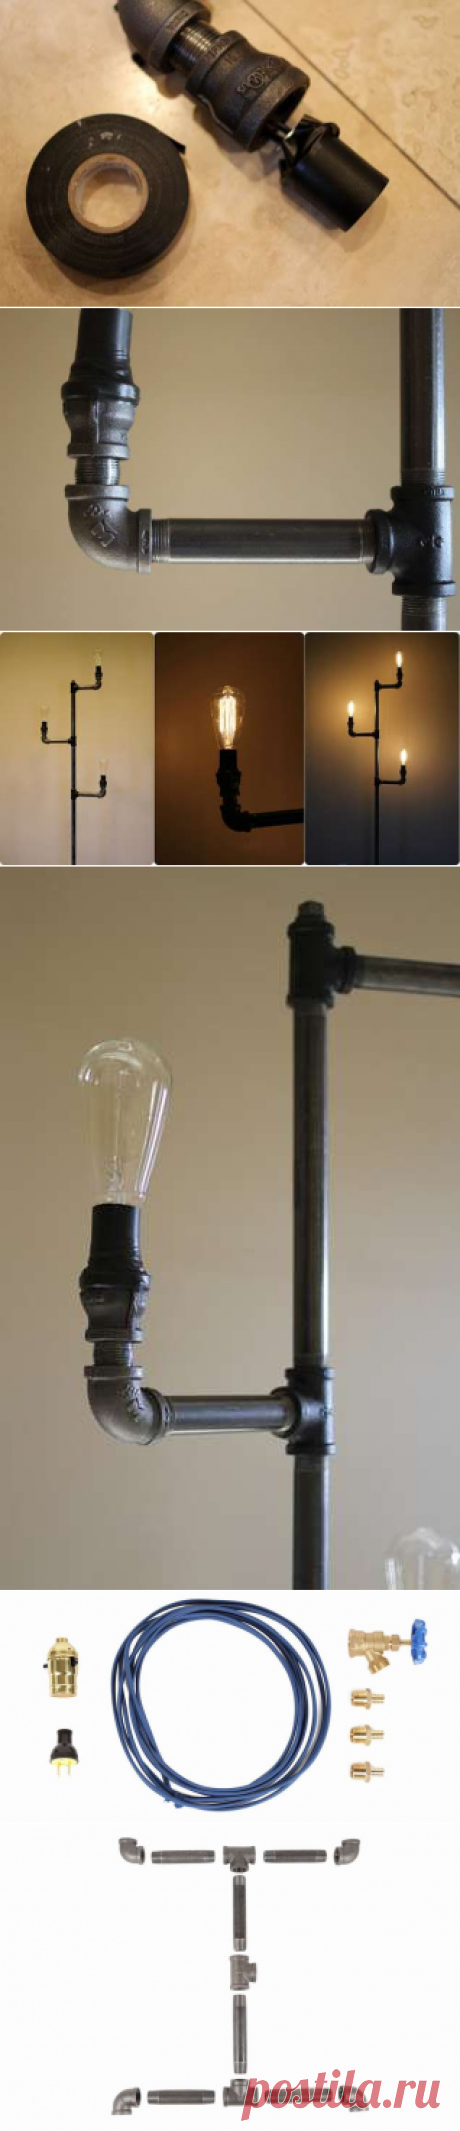 Как сделать напольный светильник из водопроводных труб